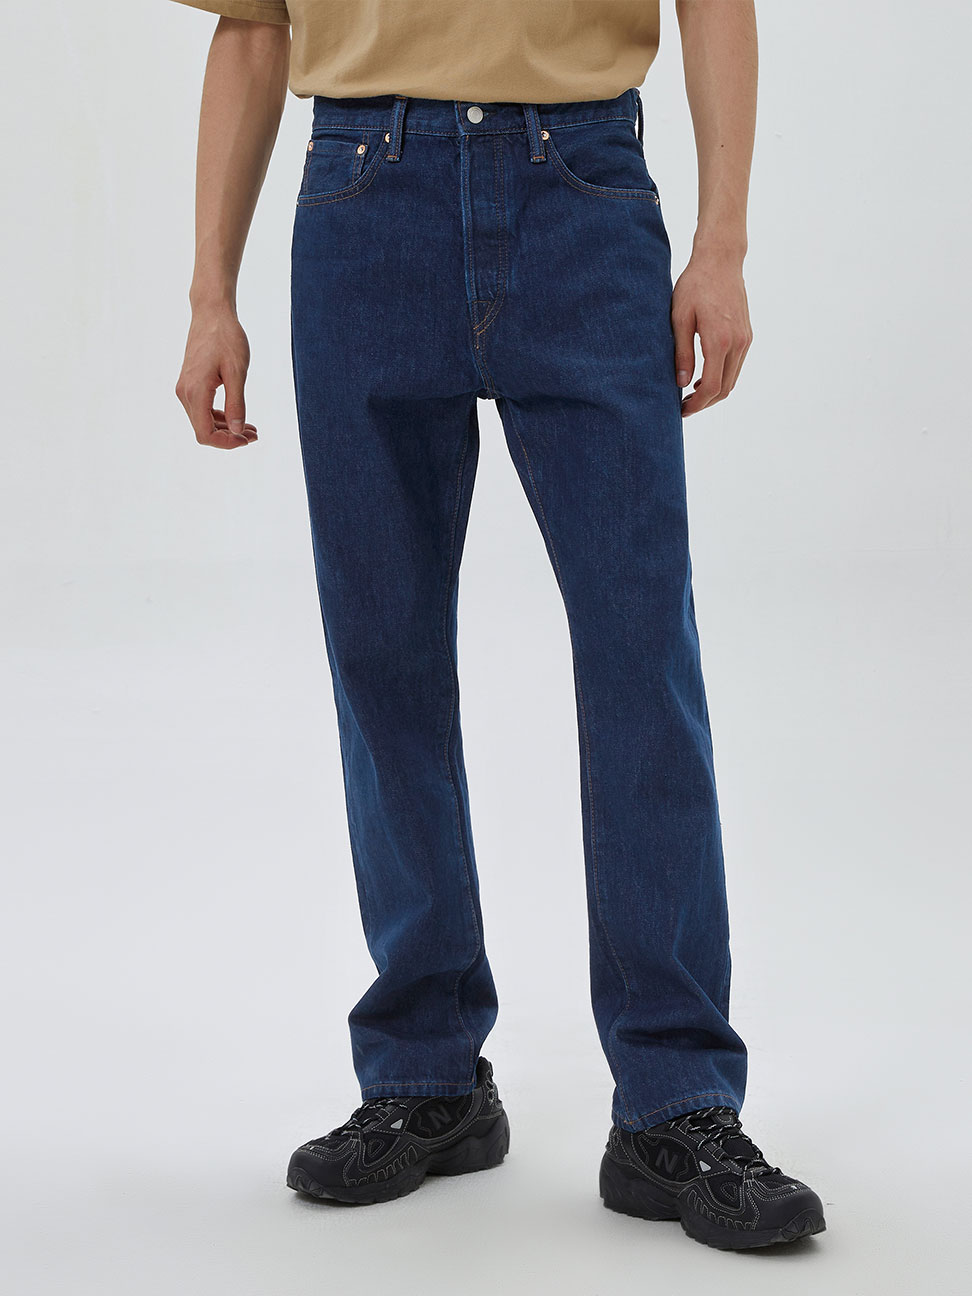 男裝|純棉直筒牛仔褲 90S復古系列-深藍色